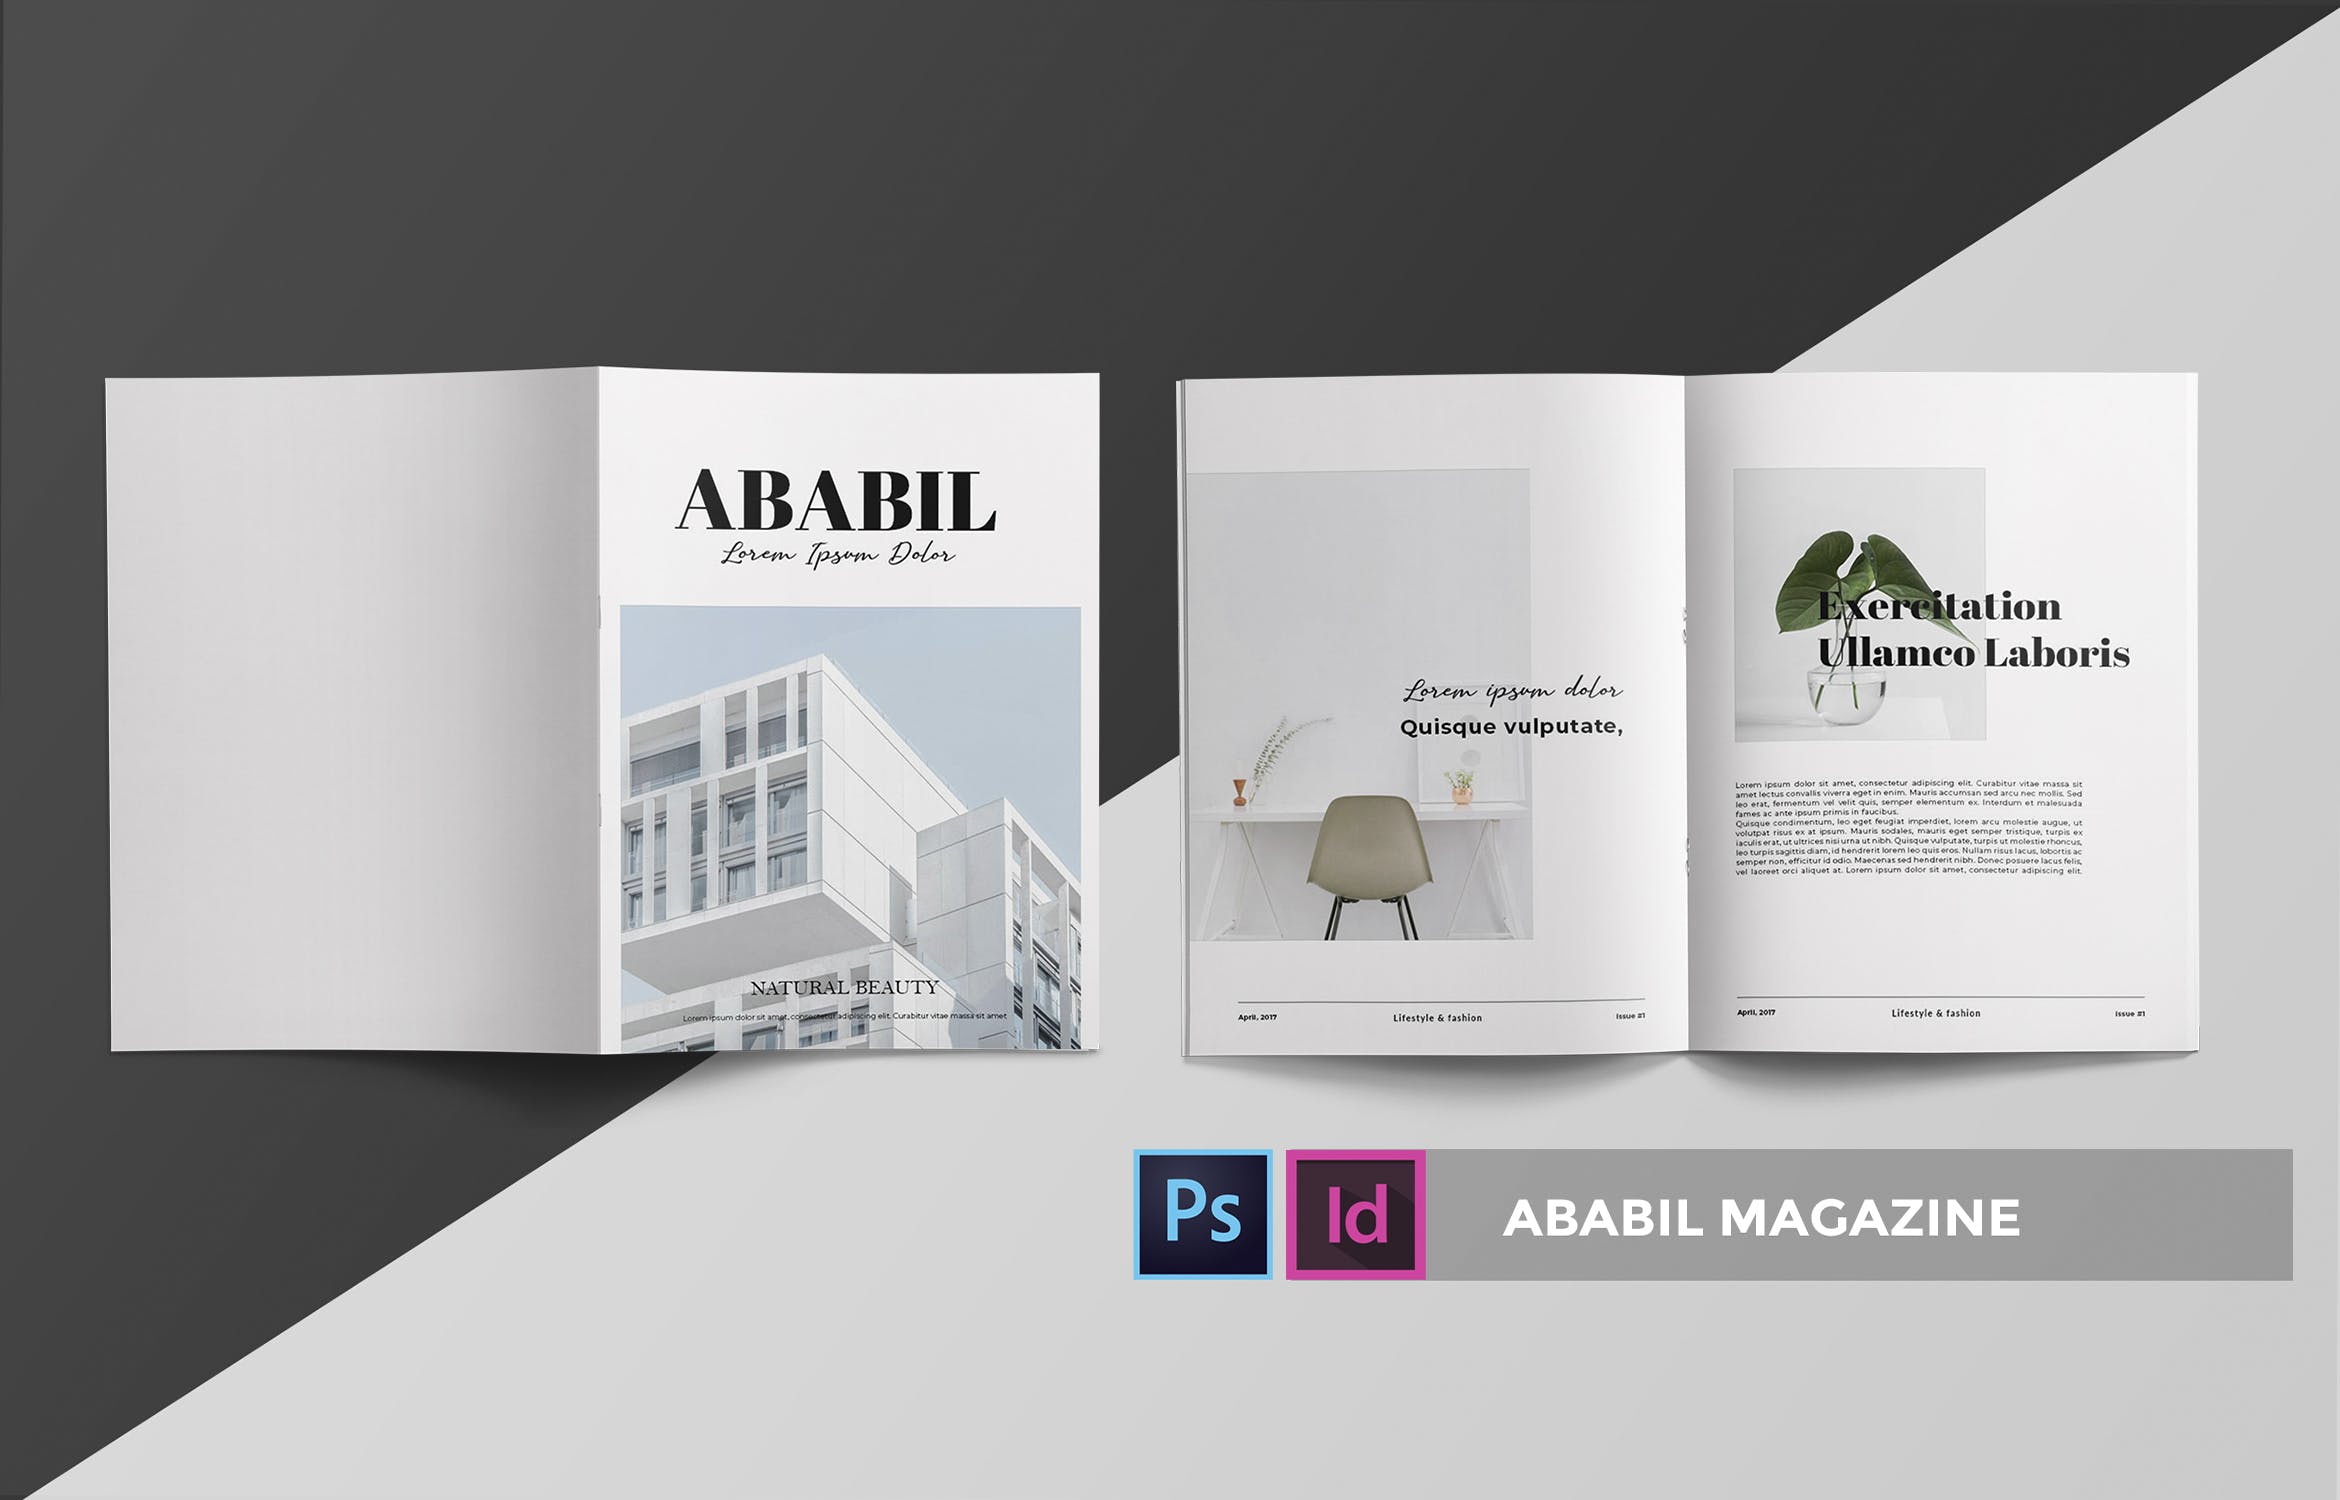 高端建筑/设计/房地产主题非凡图库精选杂志排版设计INDD模板 ABABIL | Magazine Template插图(2)